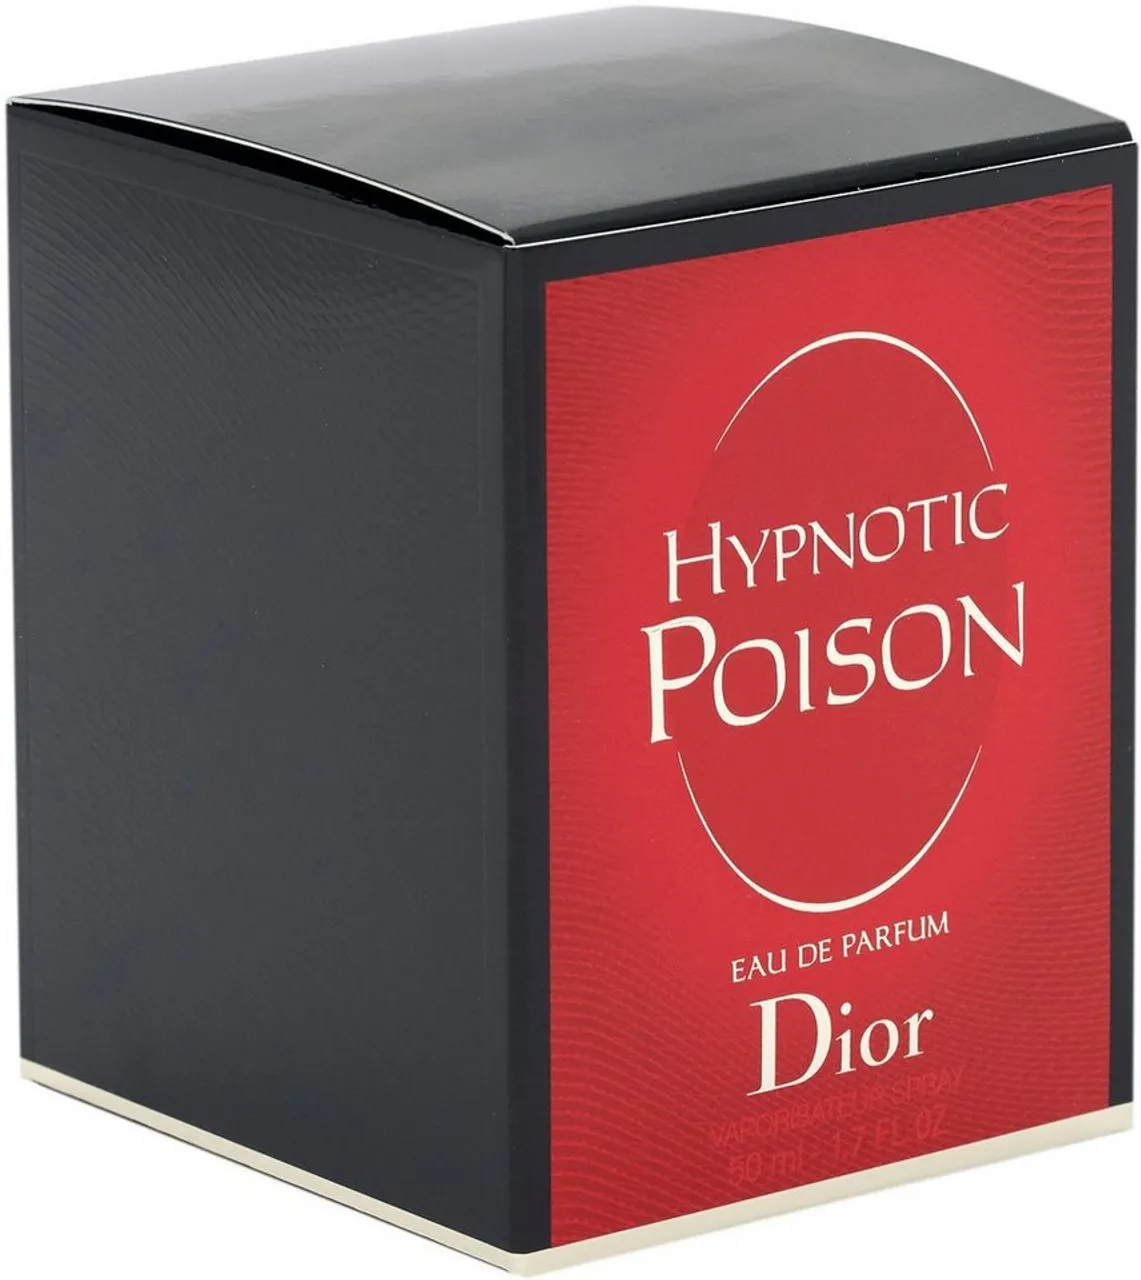 Dior Eau de Parfum Hypnotic Poison